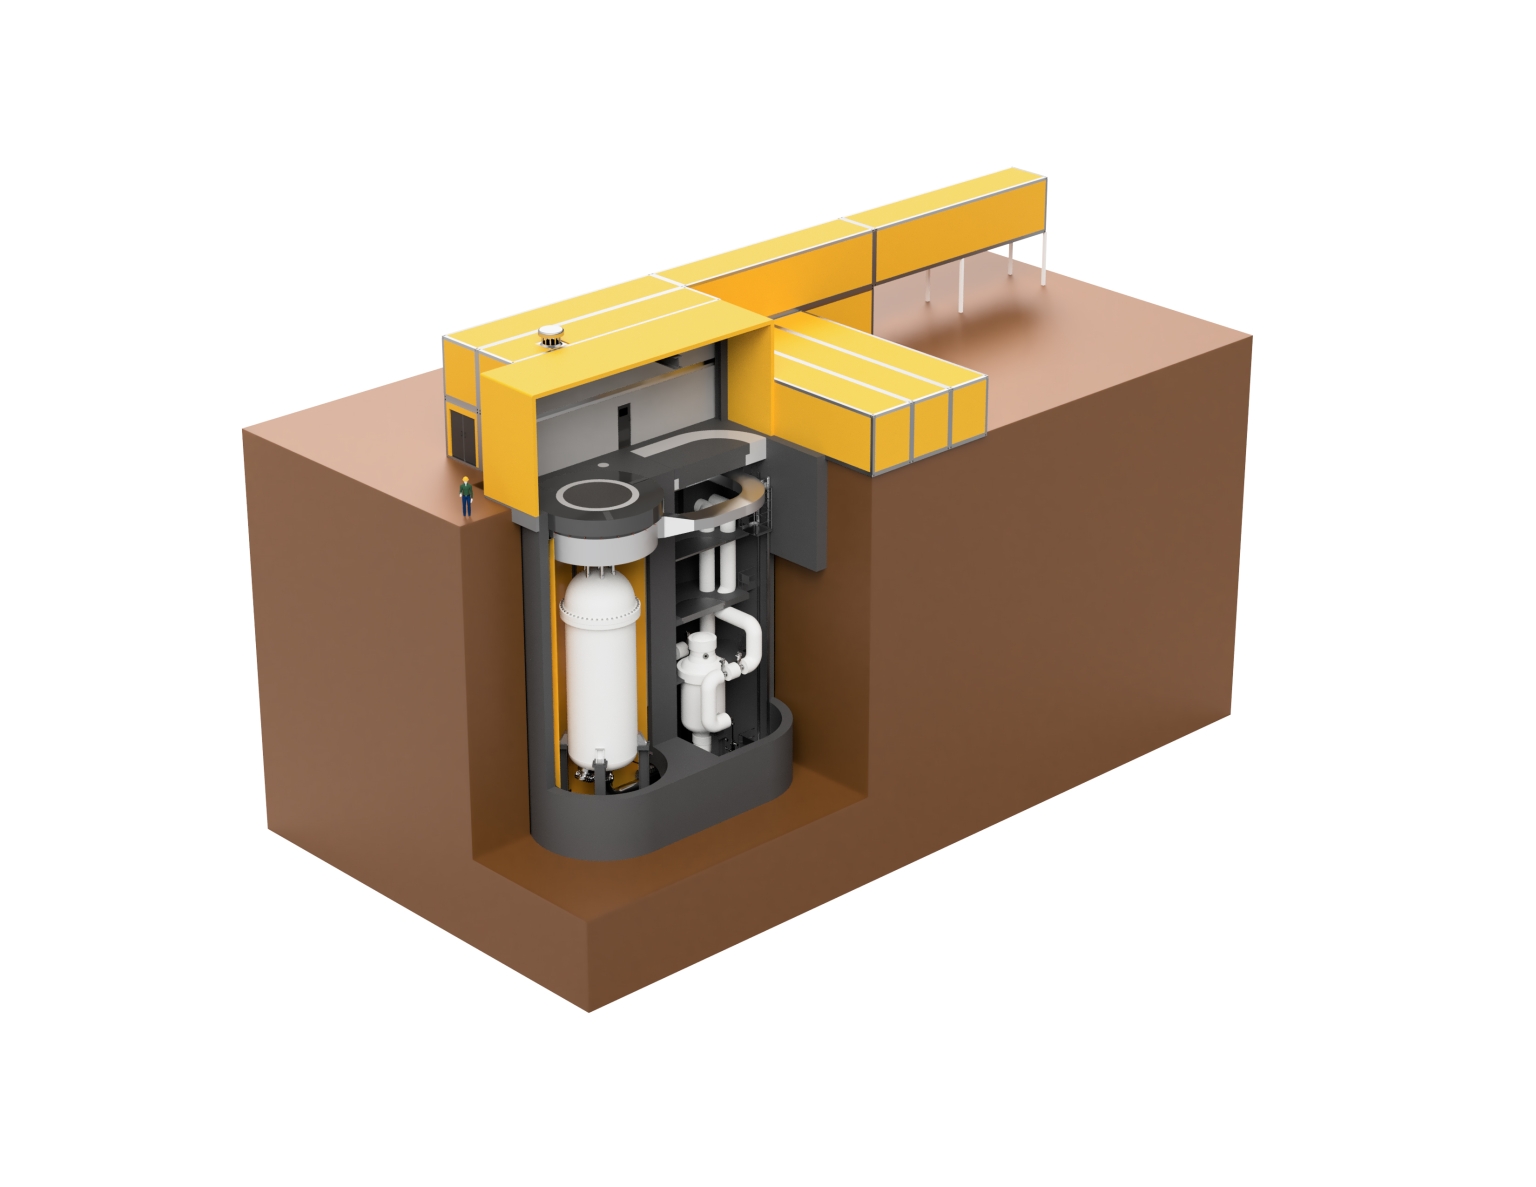 Die USNC beschreibt ihren MMR als einen Walk-Away-Reaktor, dessen Brennstoff im Fall eines Unfalls nicht schmelzen kann. Das Konzept sieht eine Betriebszeit von 20 Jahren vor und dies mit nur einer Brennstoffladung.